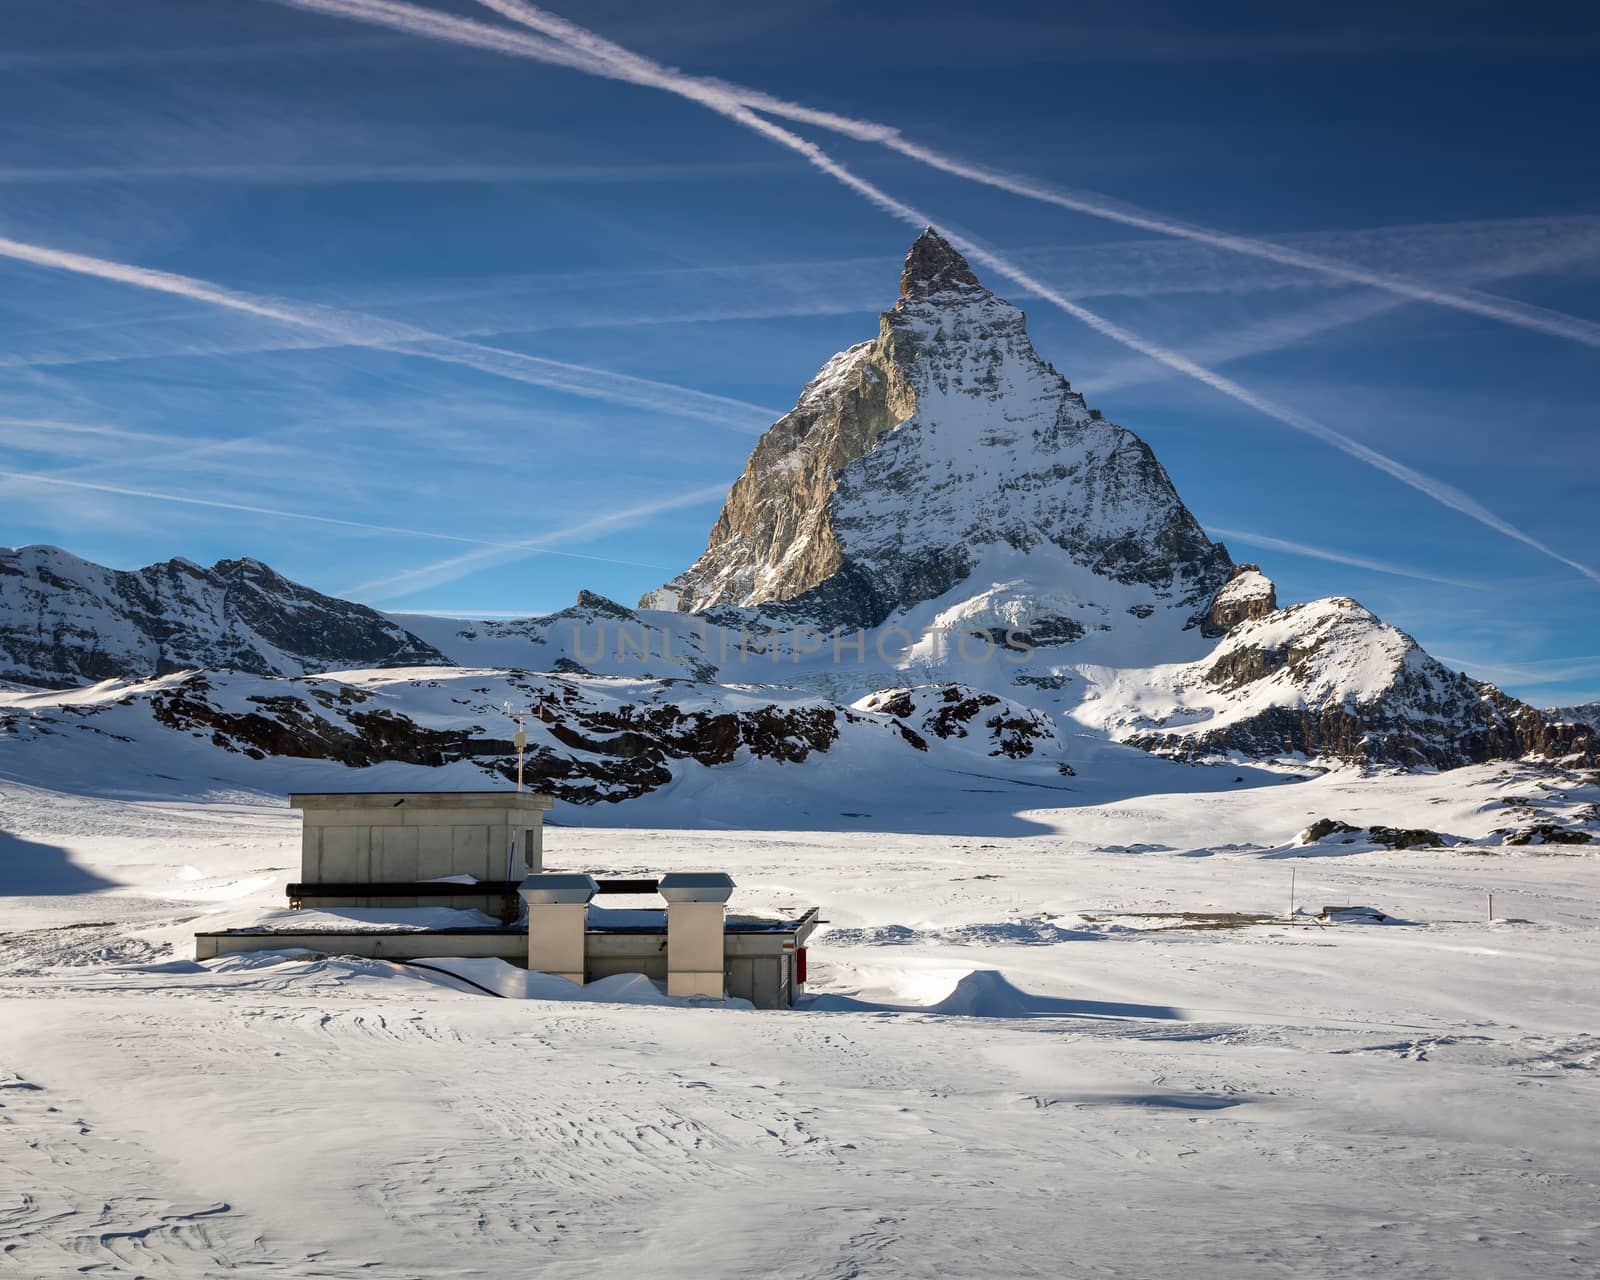 Matterhorn Peak in Zermatt Ski Resort, Switzerland by anshar